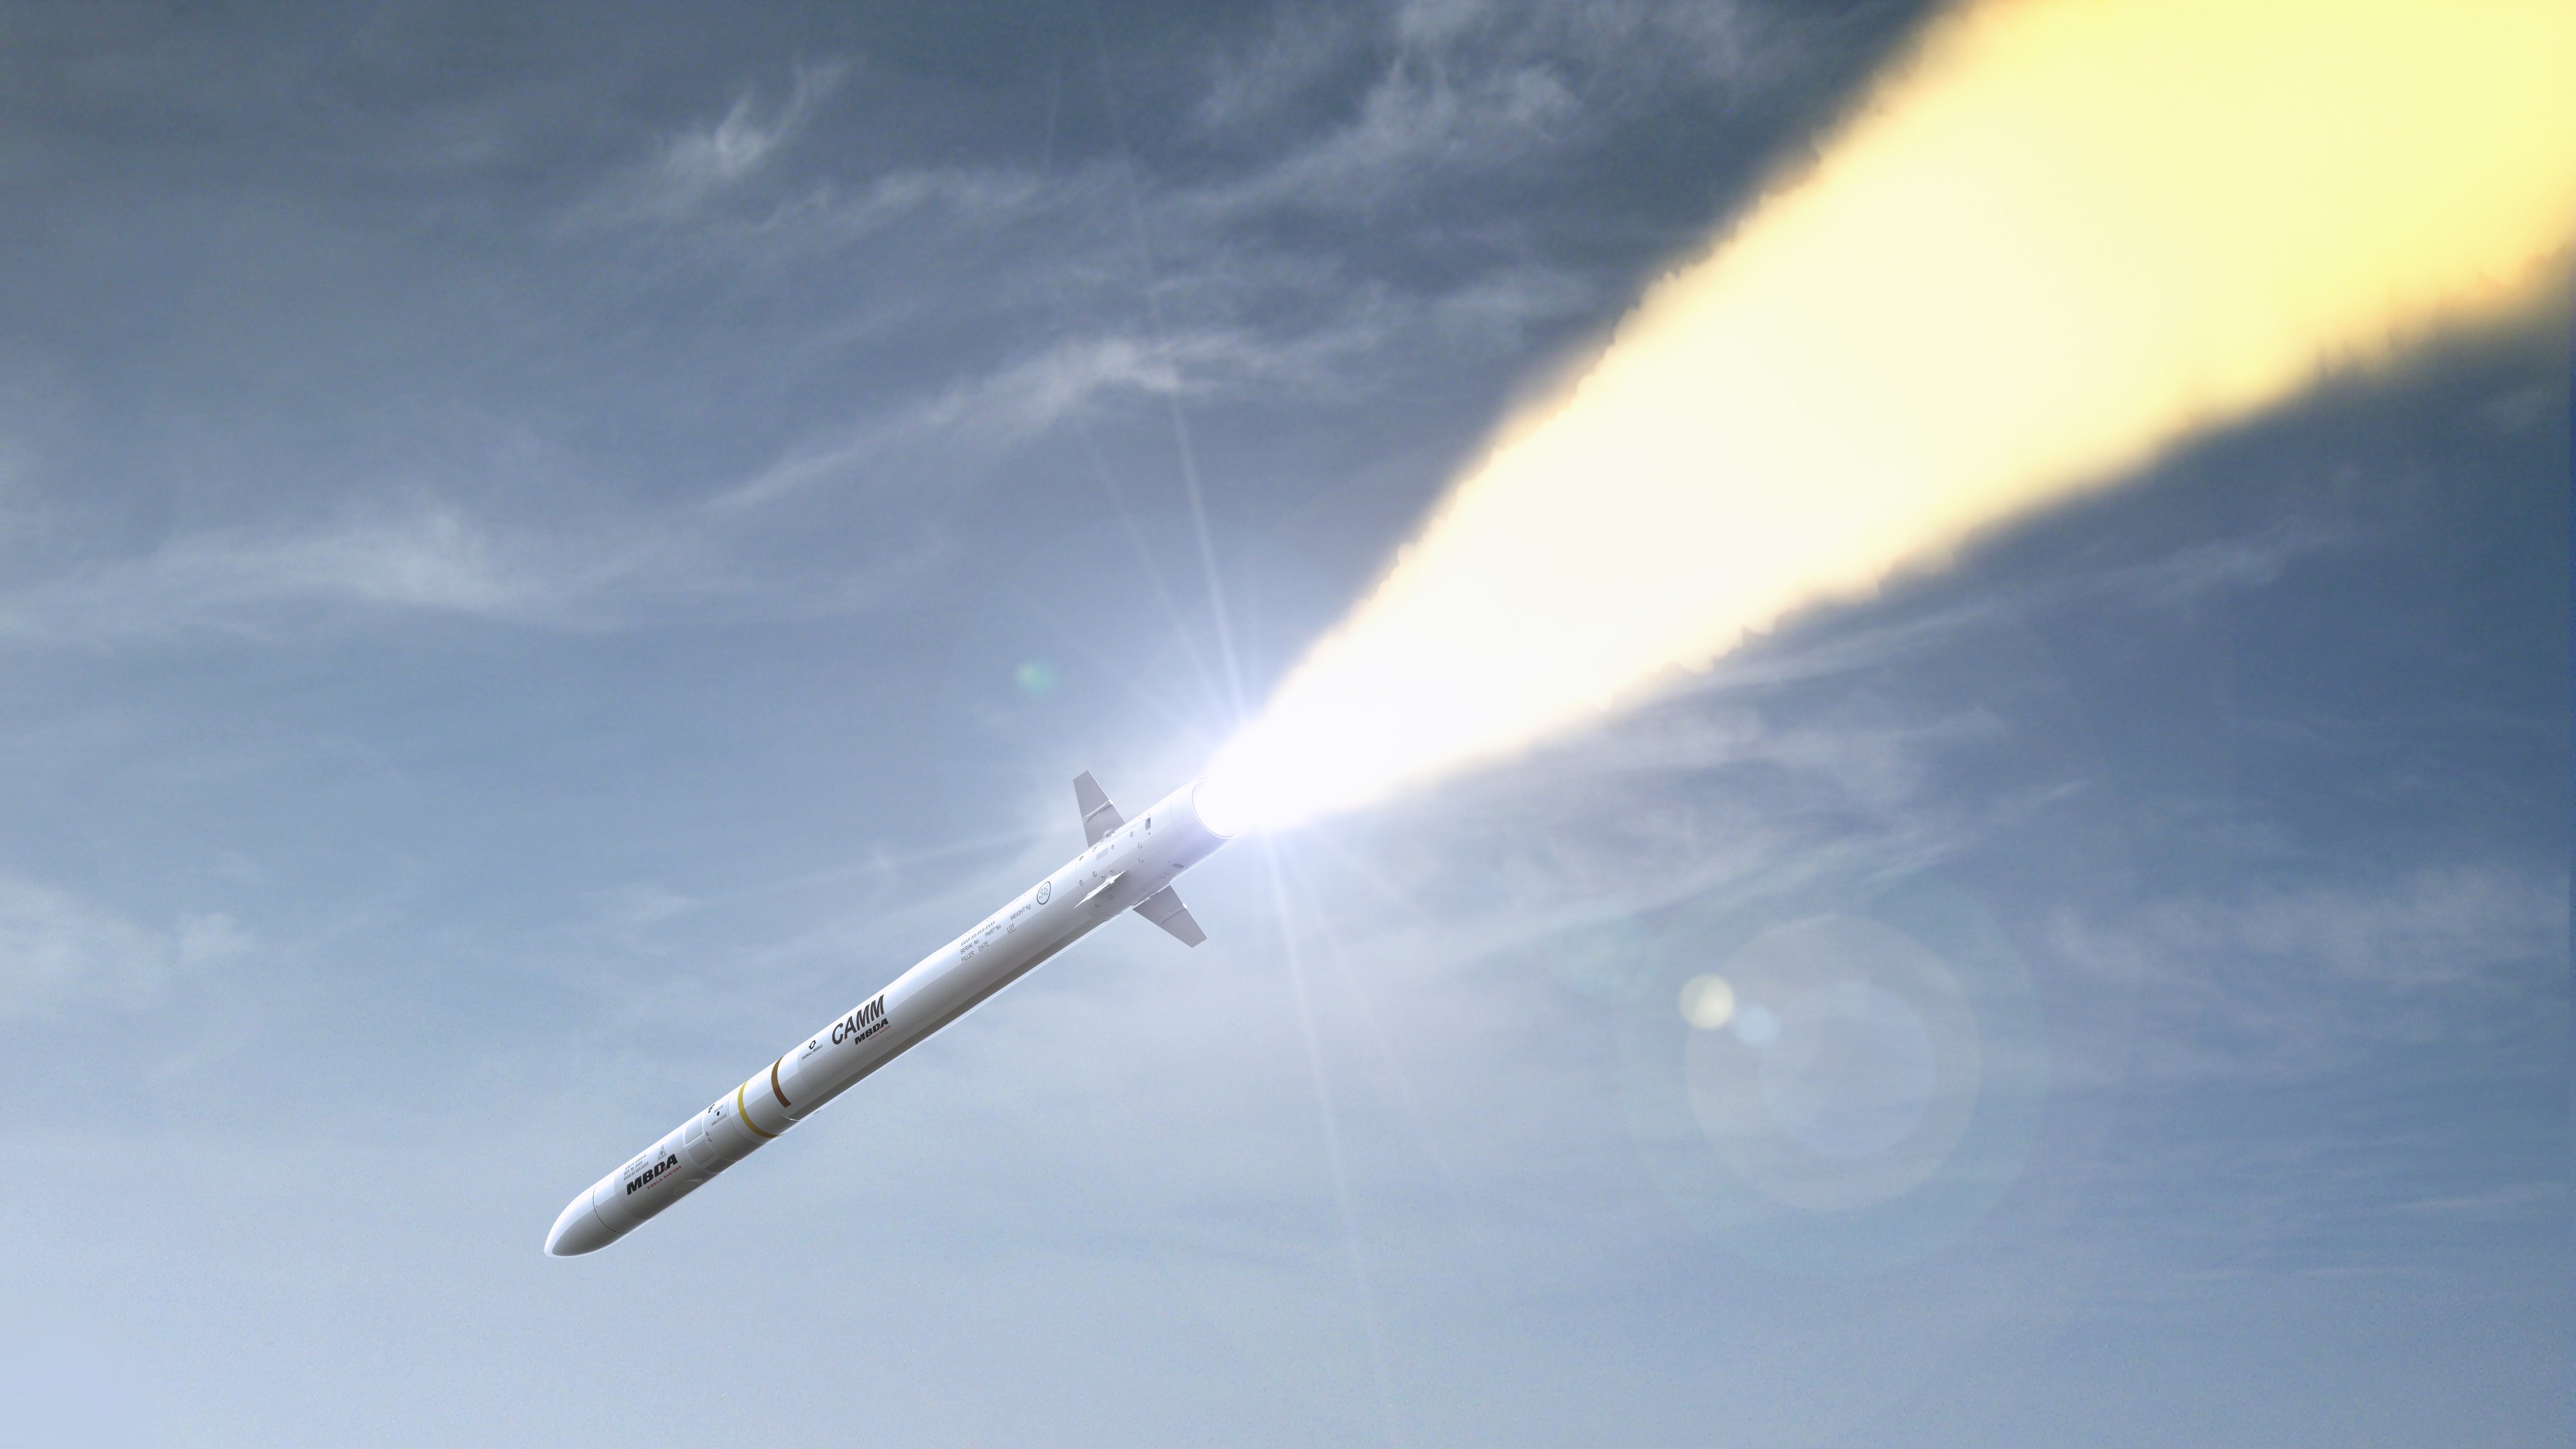 Le missilier MBDA signe un nouveau méga-contrat (défense sol-air)